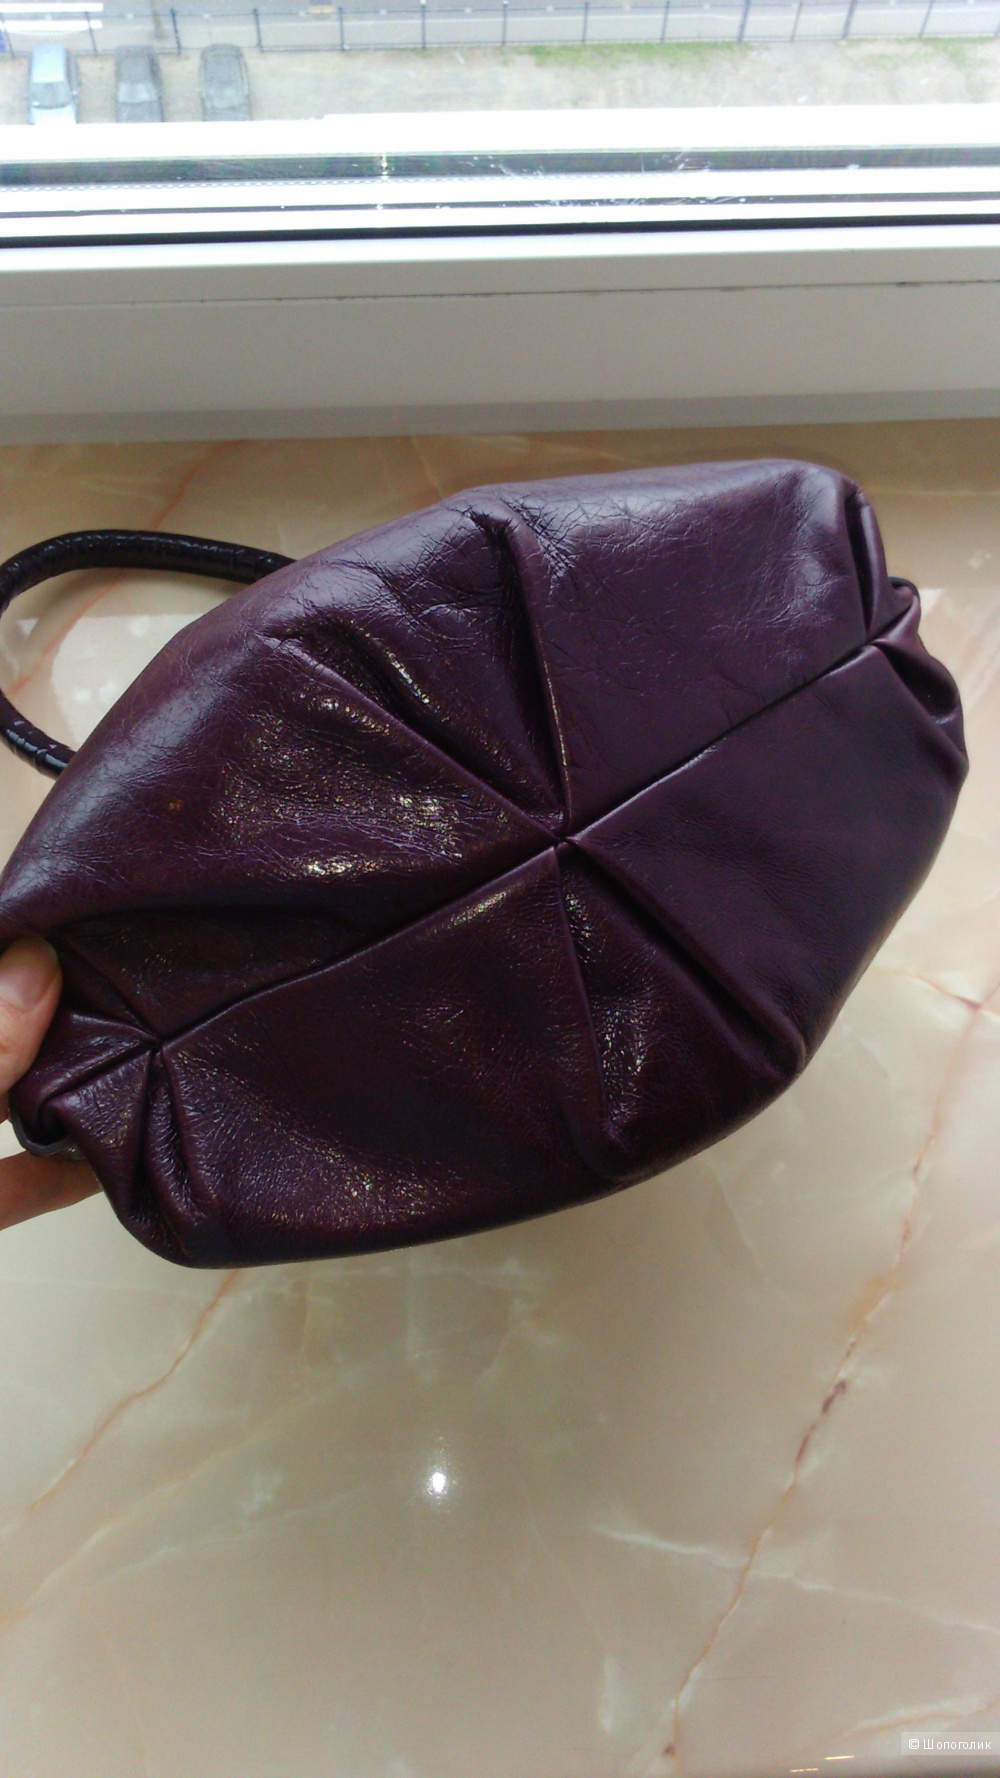 Небольшая фиолетовая сумочка из натуральной кожи